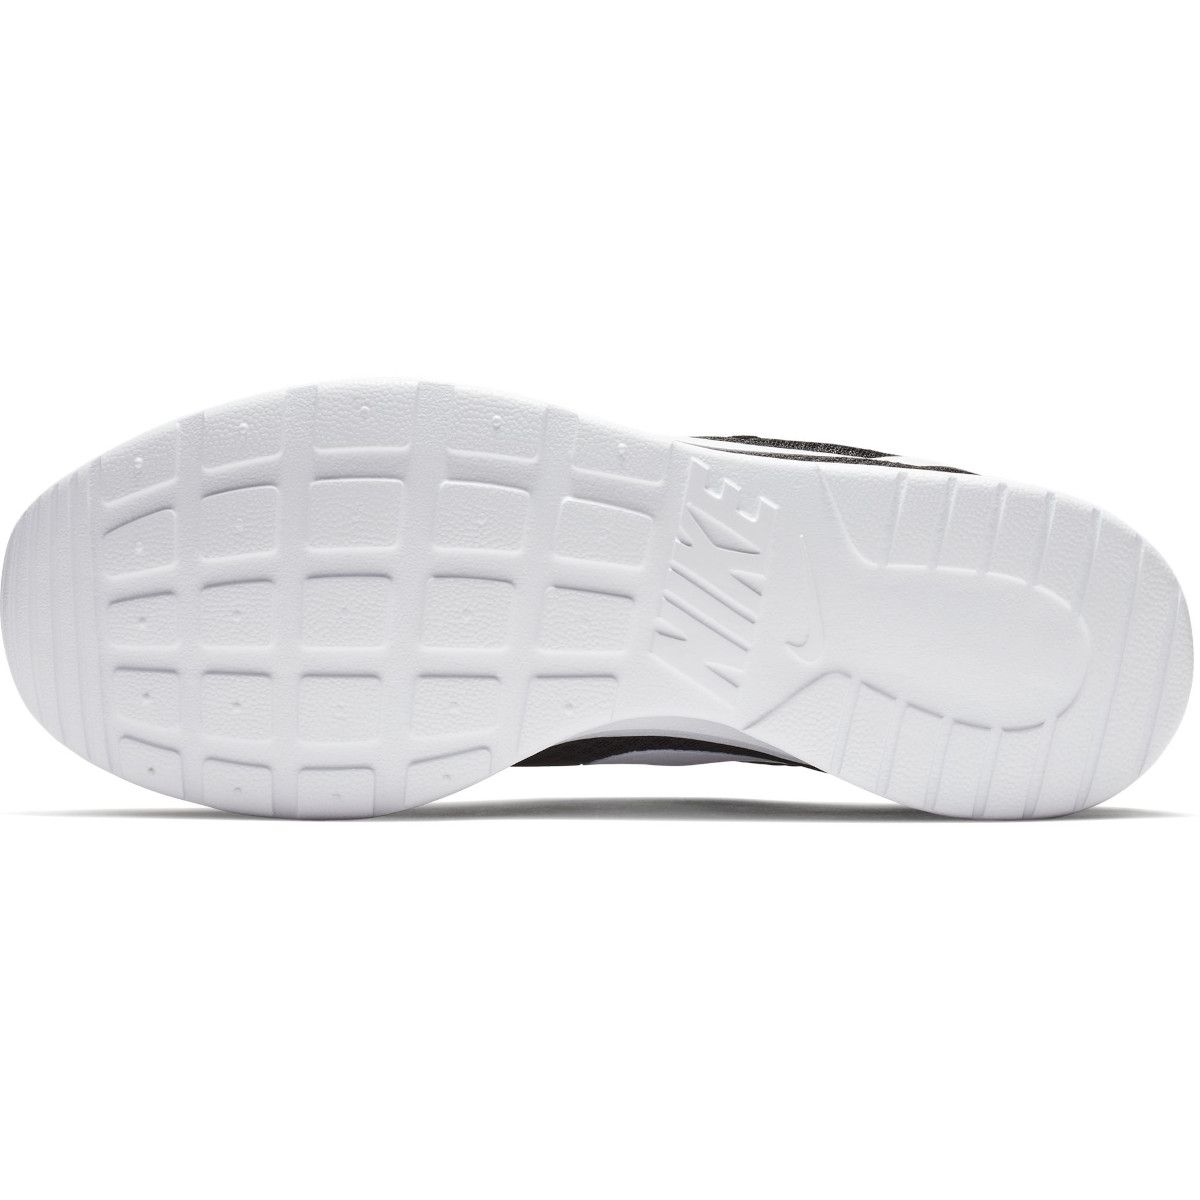 Nike Tanjun Men's Shoes 812654-011